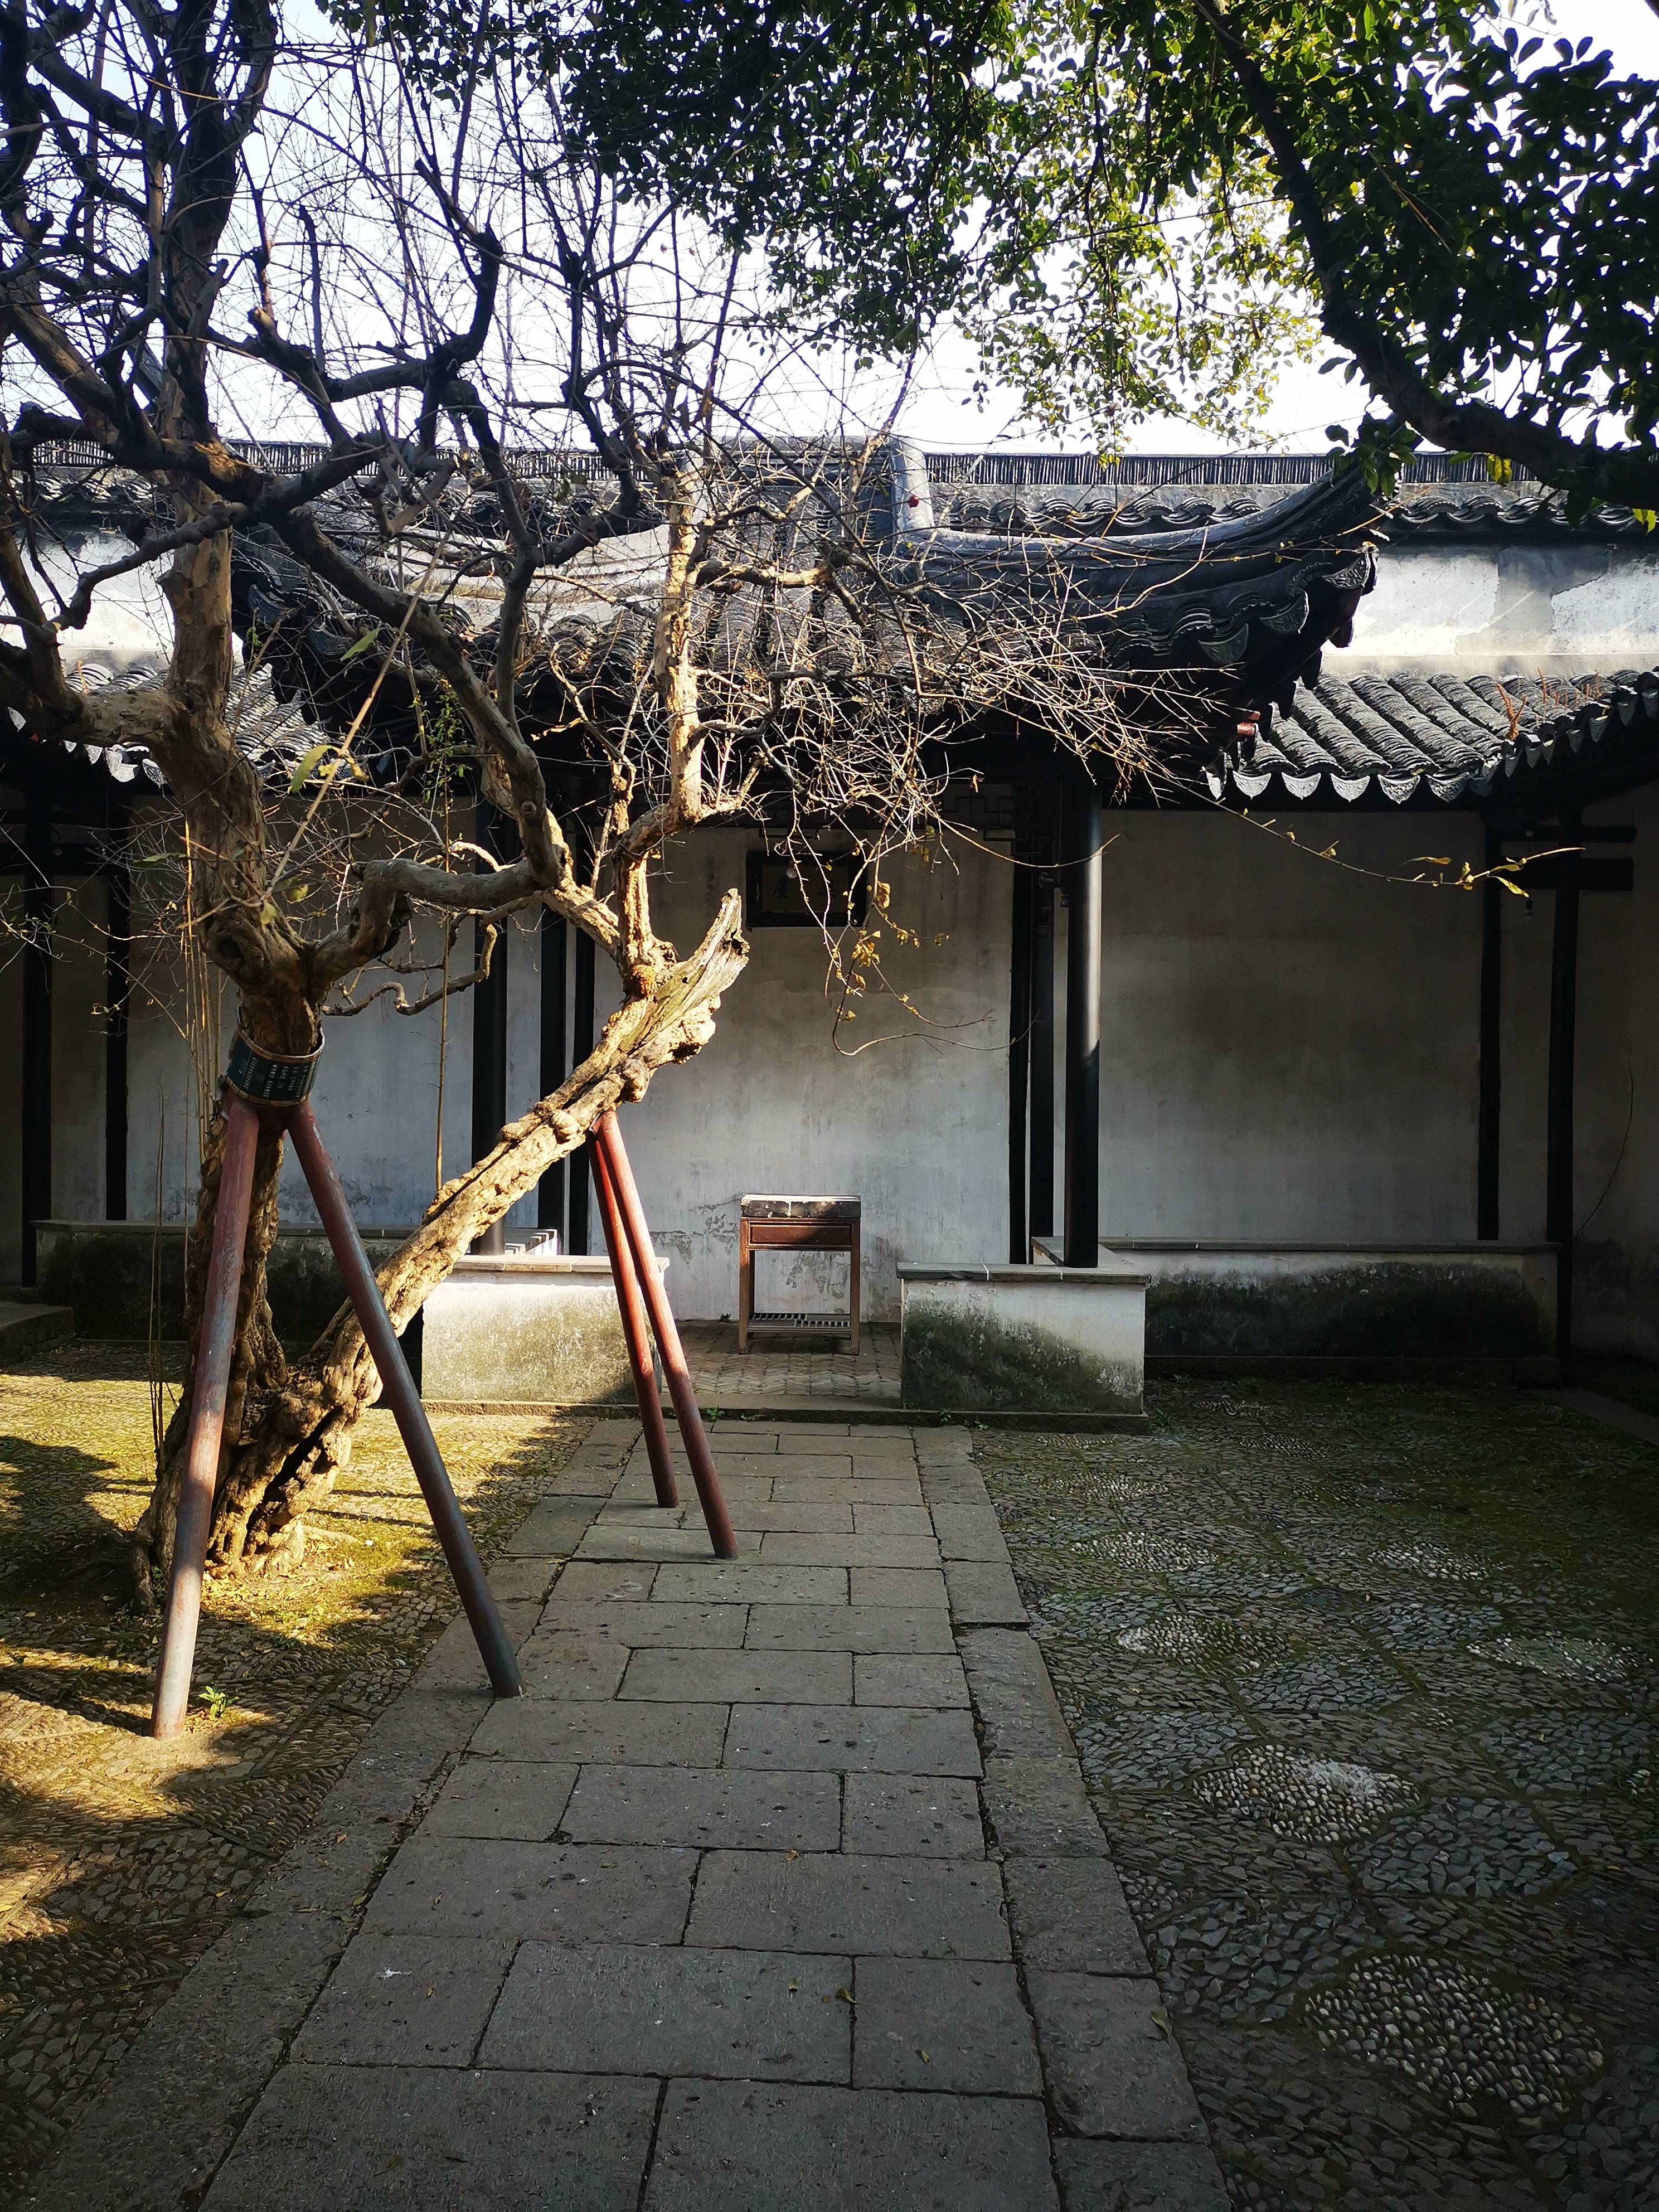 苏州越城遗址博物馆图片